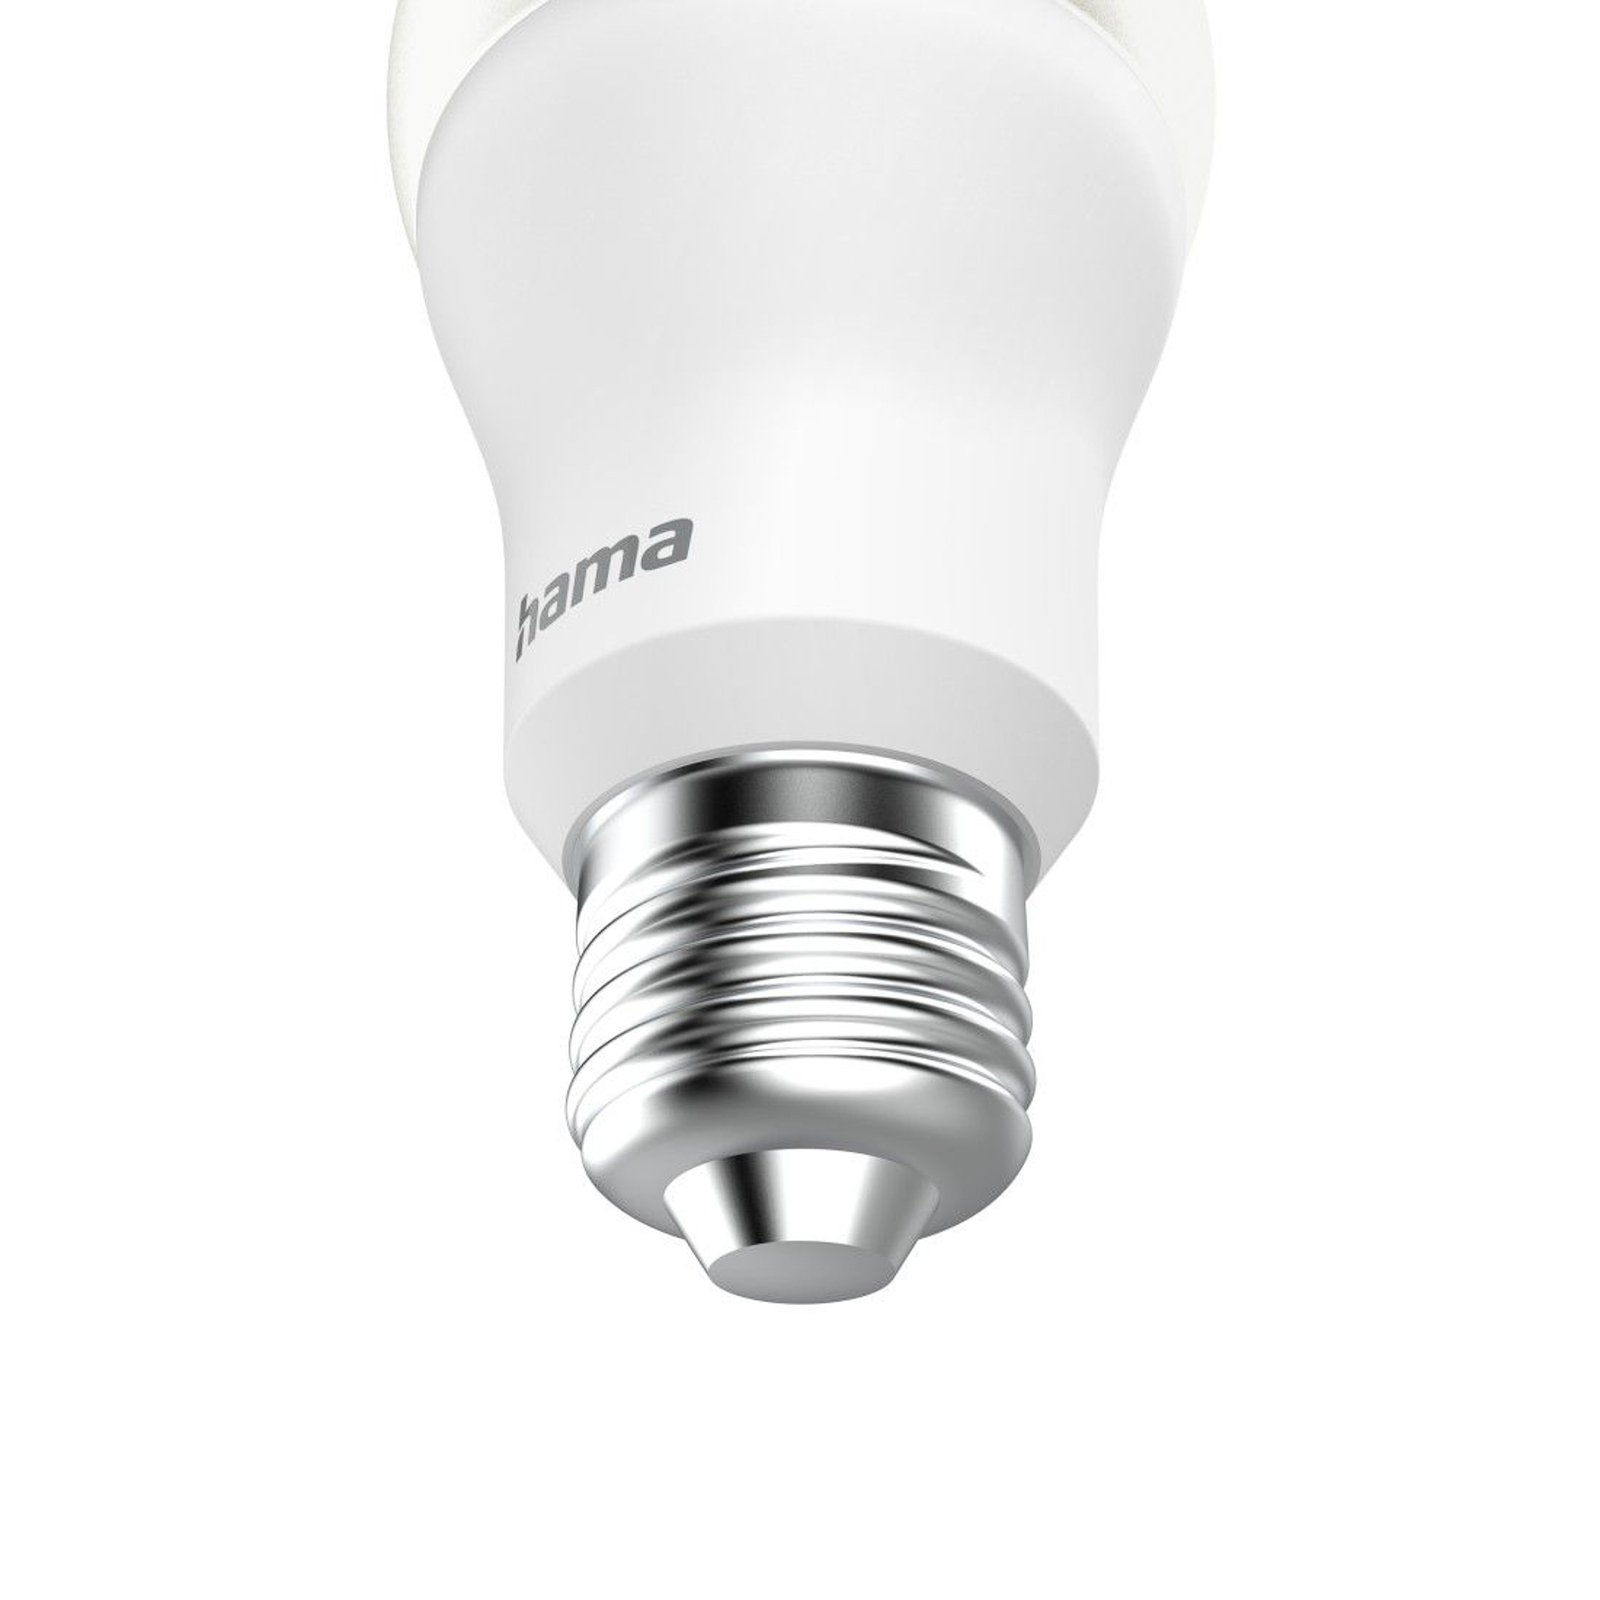 Hama Ampoule LED Smart claire E27 A60 WLAN Matter 9W RGBW